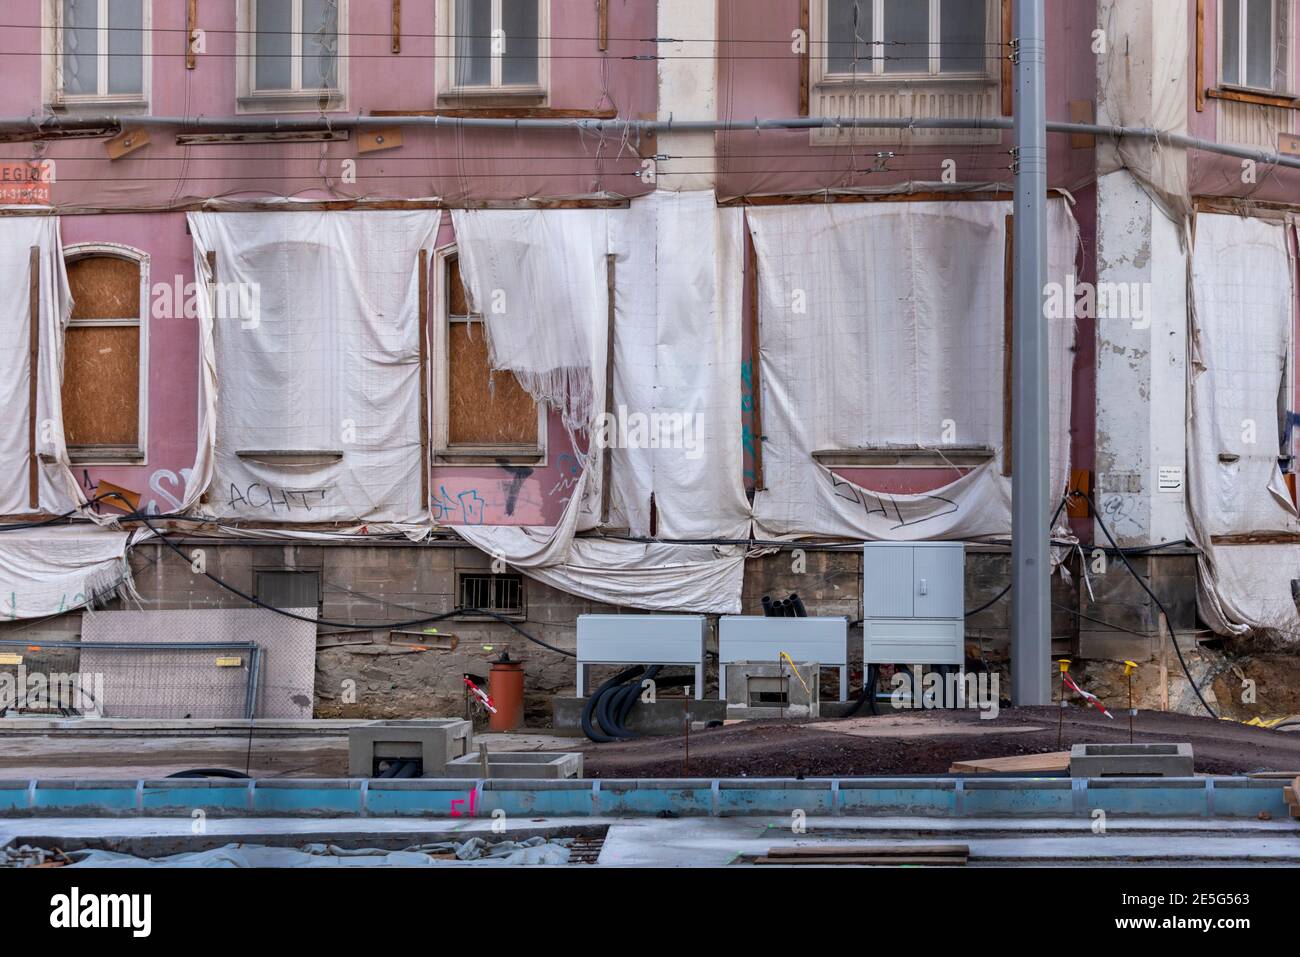 Magdeburg, Deutschland. Januar 2021. Die Fenster eines Hauses sind mit Brettern verschlossen. Vor ihnen hängen Tücher. Quelle: Stephan Schulz/dpa-Zentralbild/ZB/dpa/Alamy Live News Stockfoto